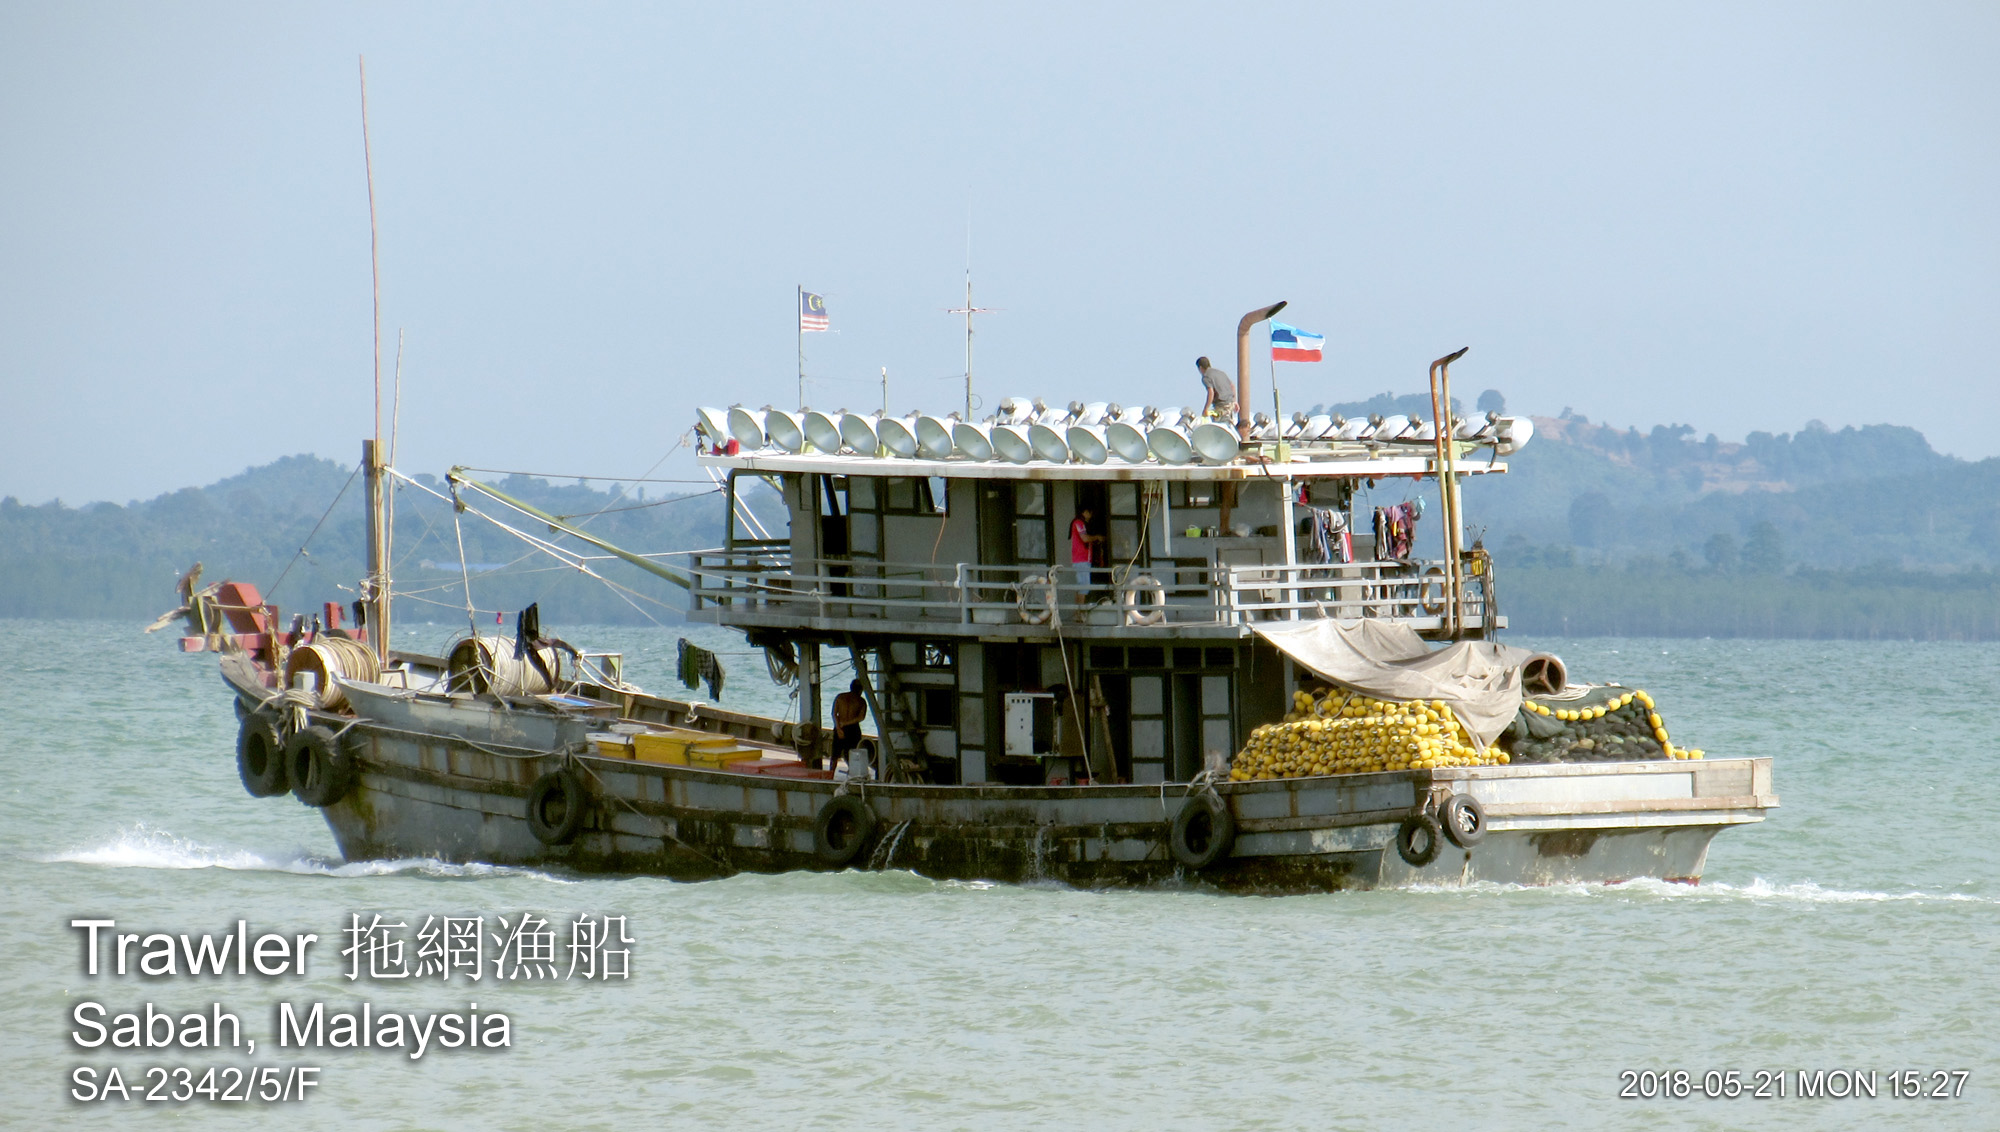 Trawler 拖網漁船, Sabah, Malaysia SA2342/5/F